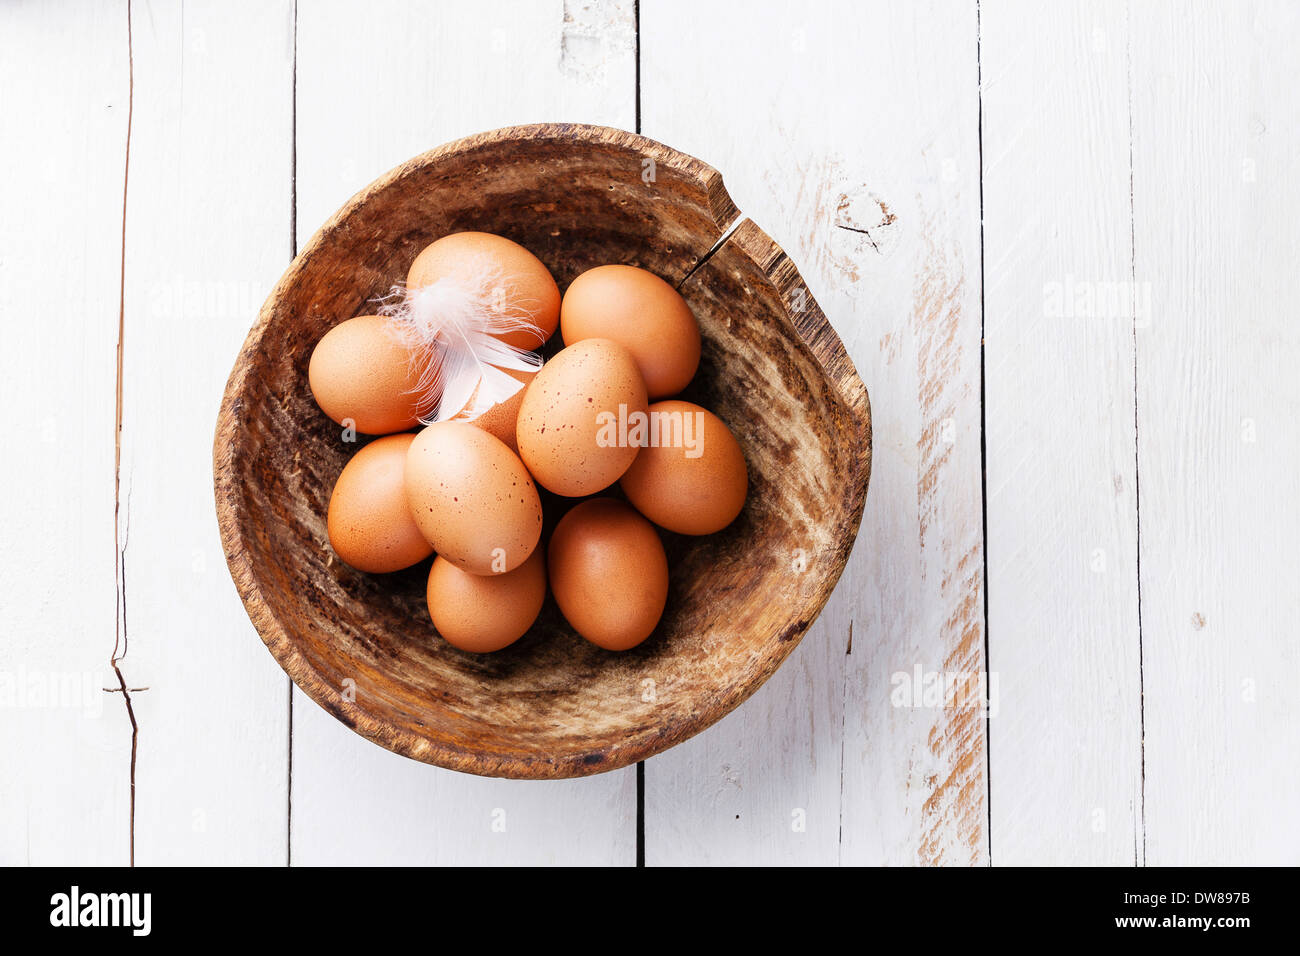 Los huevos en el recipiente sobre fondo de madera Foto de stock